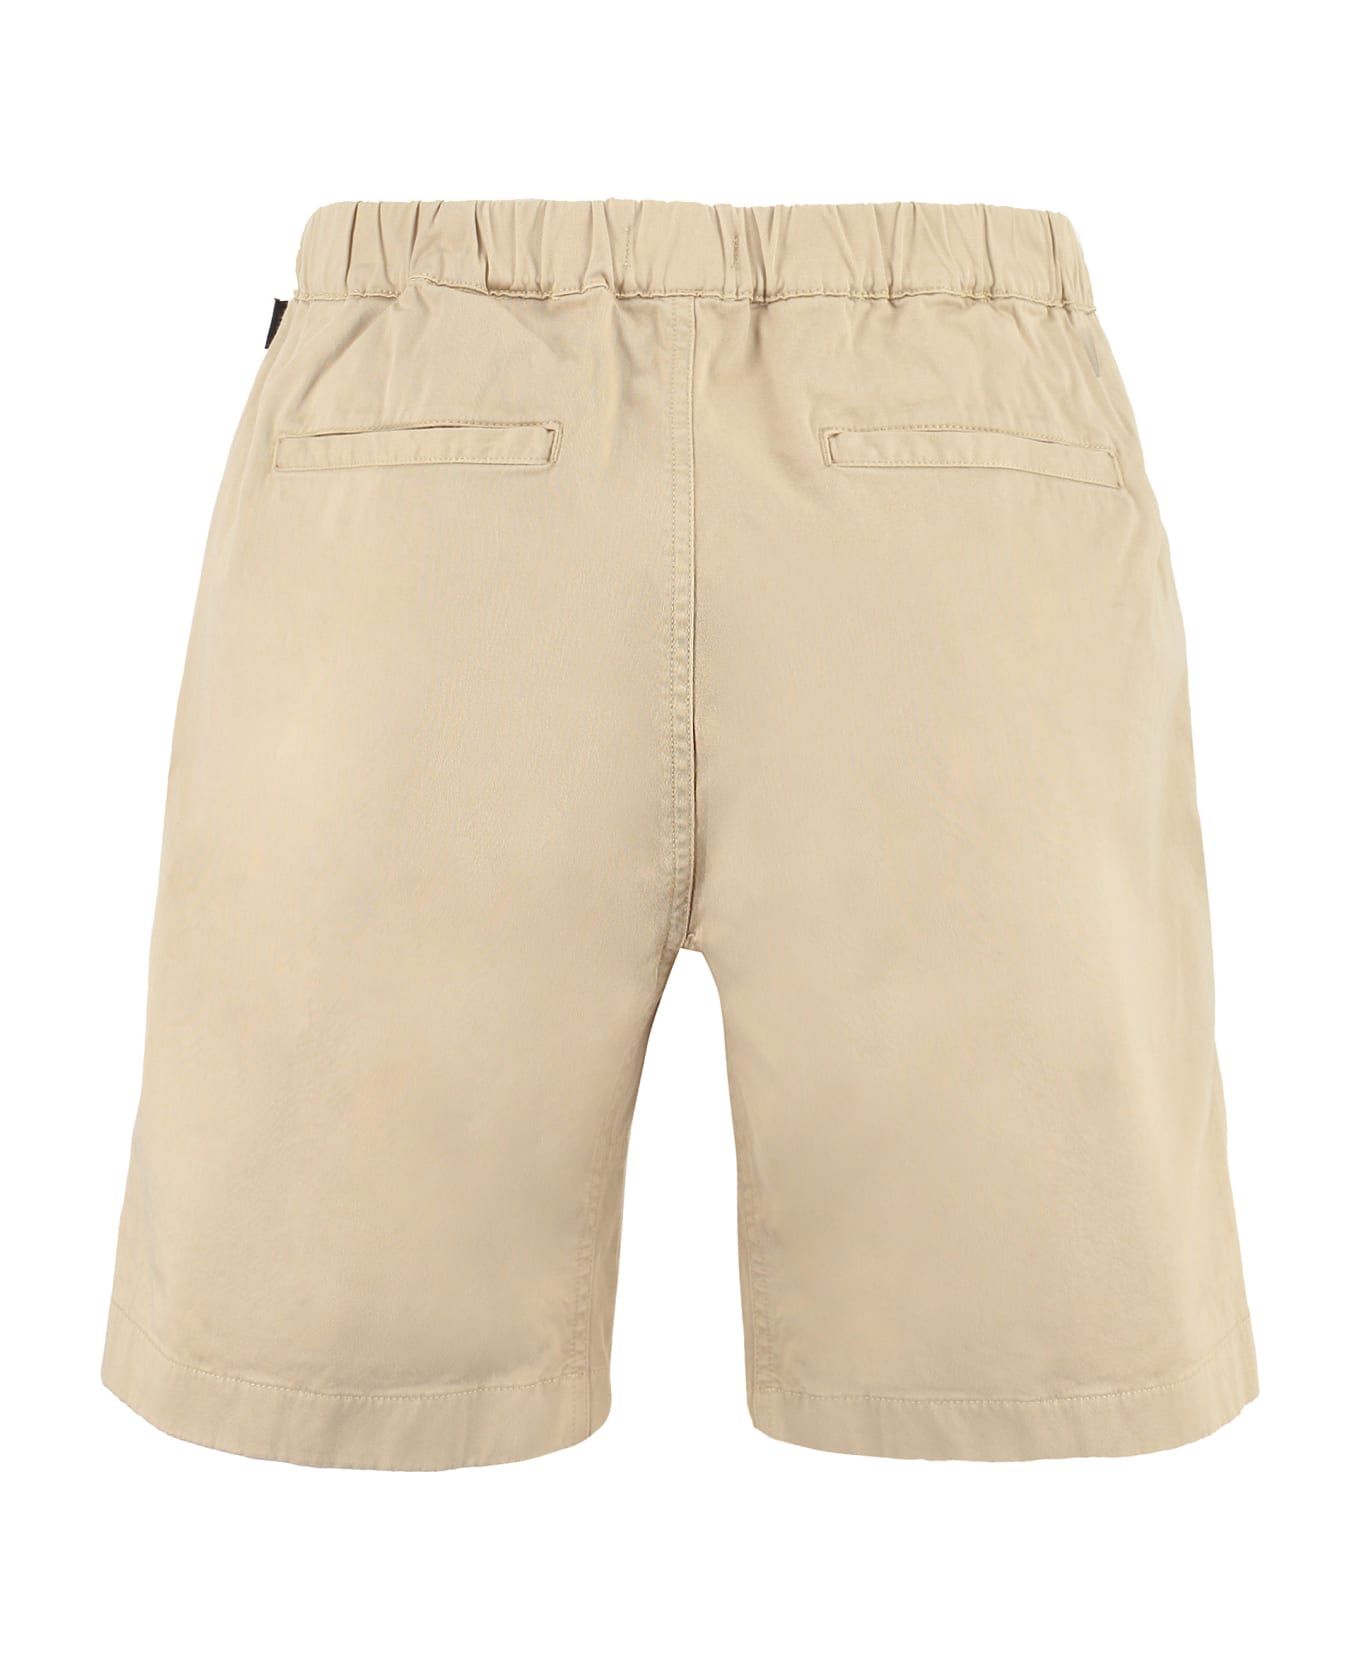 Woolrich Cotton Shorts - Beige